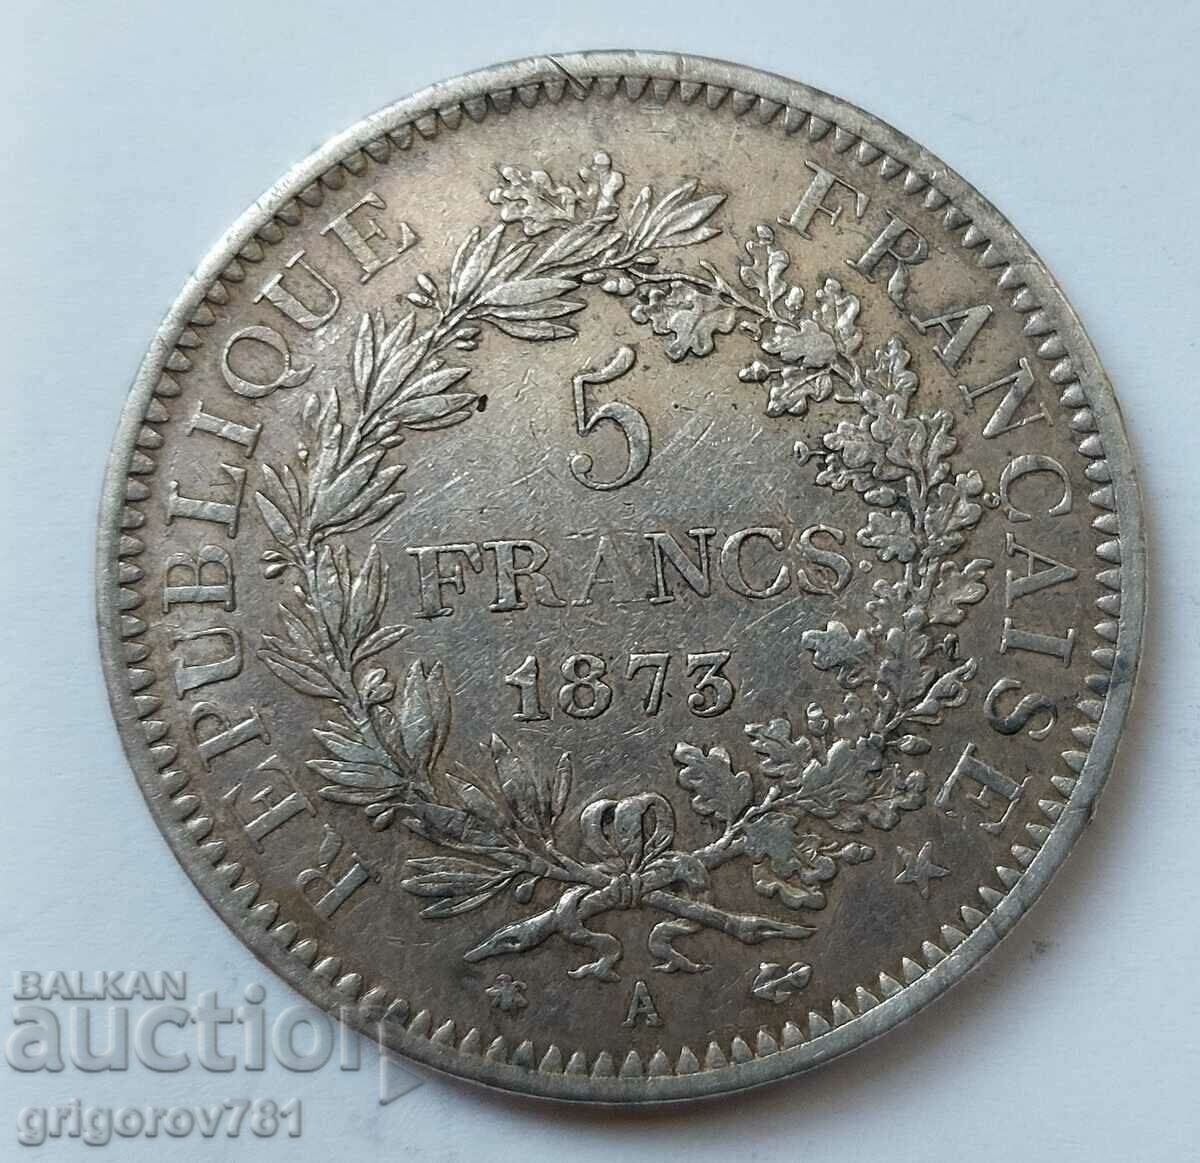 5 Φράγκα Ασήμι Γαλλία 1973 A - Ασημένιο νόμισμα #87